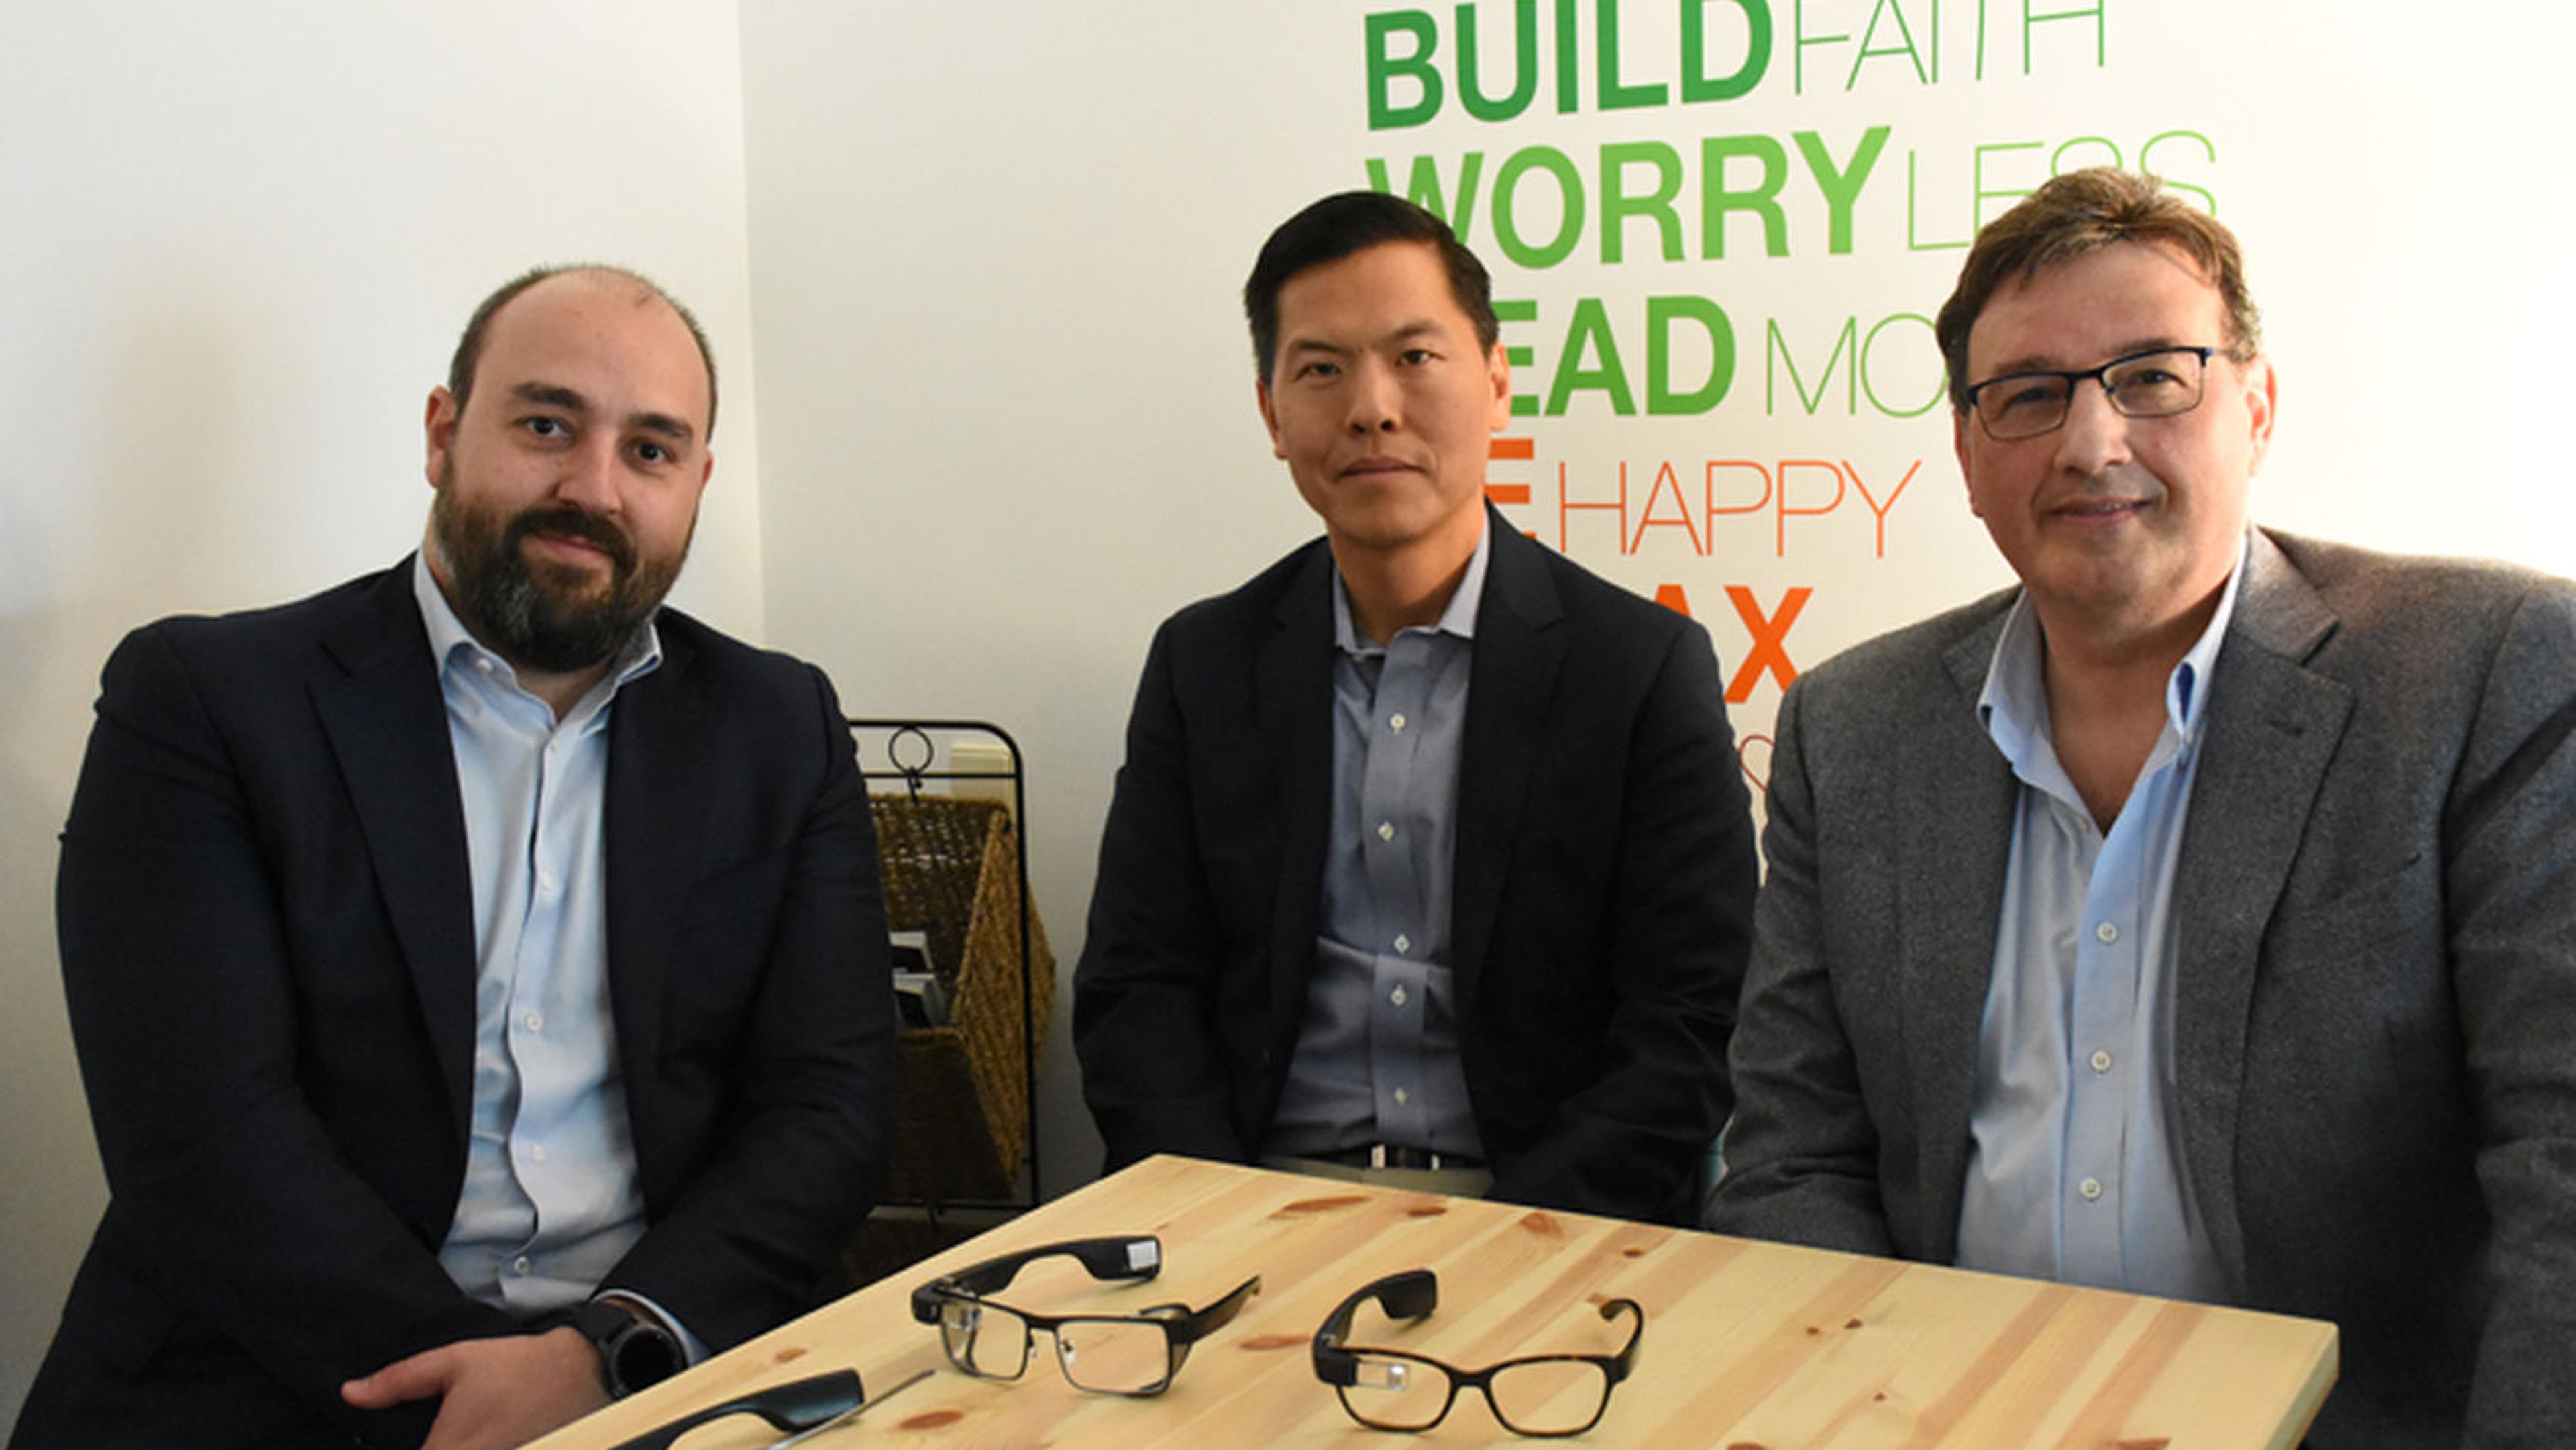 Alfonso Colomé, CEO de Streye, y Juan J. Beltrán, director de estrategia de Streye junto a James Lee, Head of Sales de Google Glass en Google en el anuncio de la exclusividad online conseguida por la empresa.